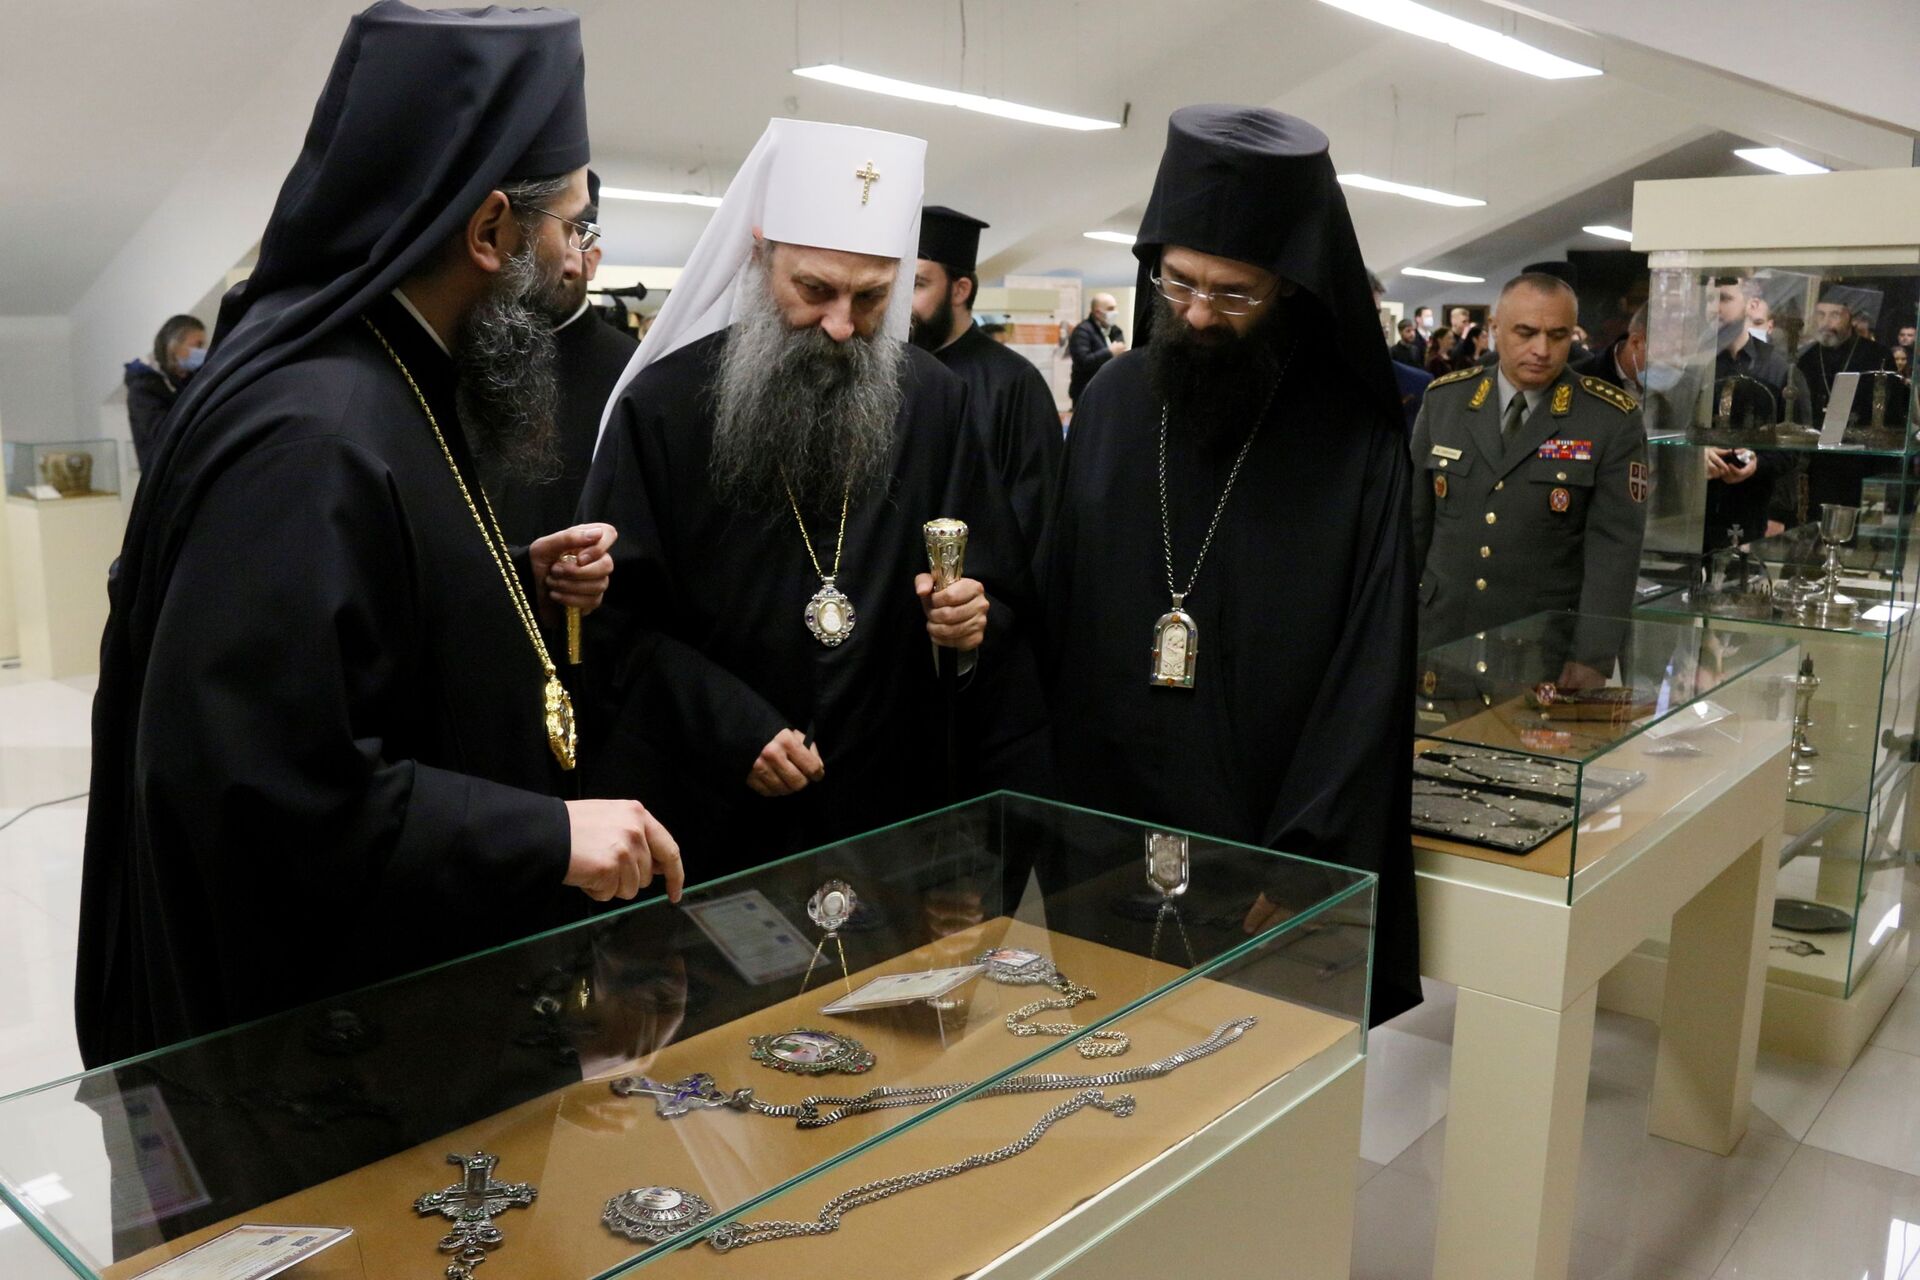 „Svaki predmet nosi pečat vere“: Patrijarh otvorio izložbu Muzeja crkvenih starina u Nišu /foto/ - Sputnik Srbija, 1920, 24.04.2021